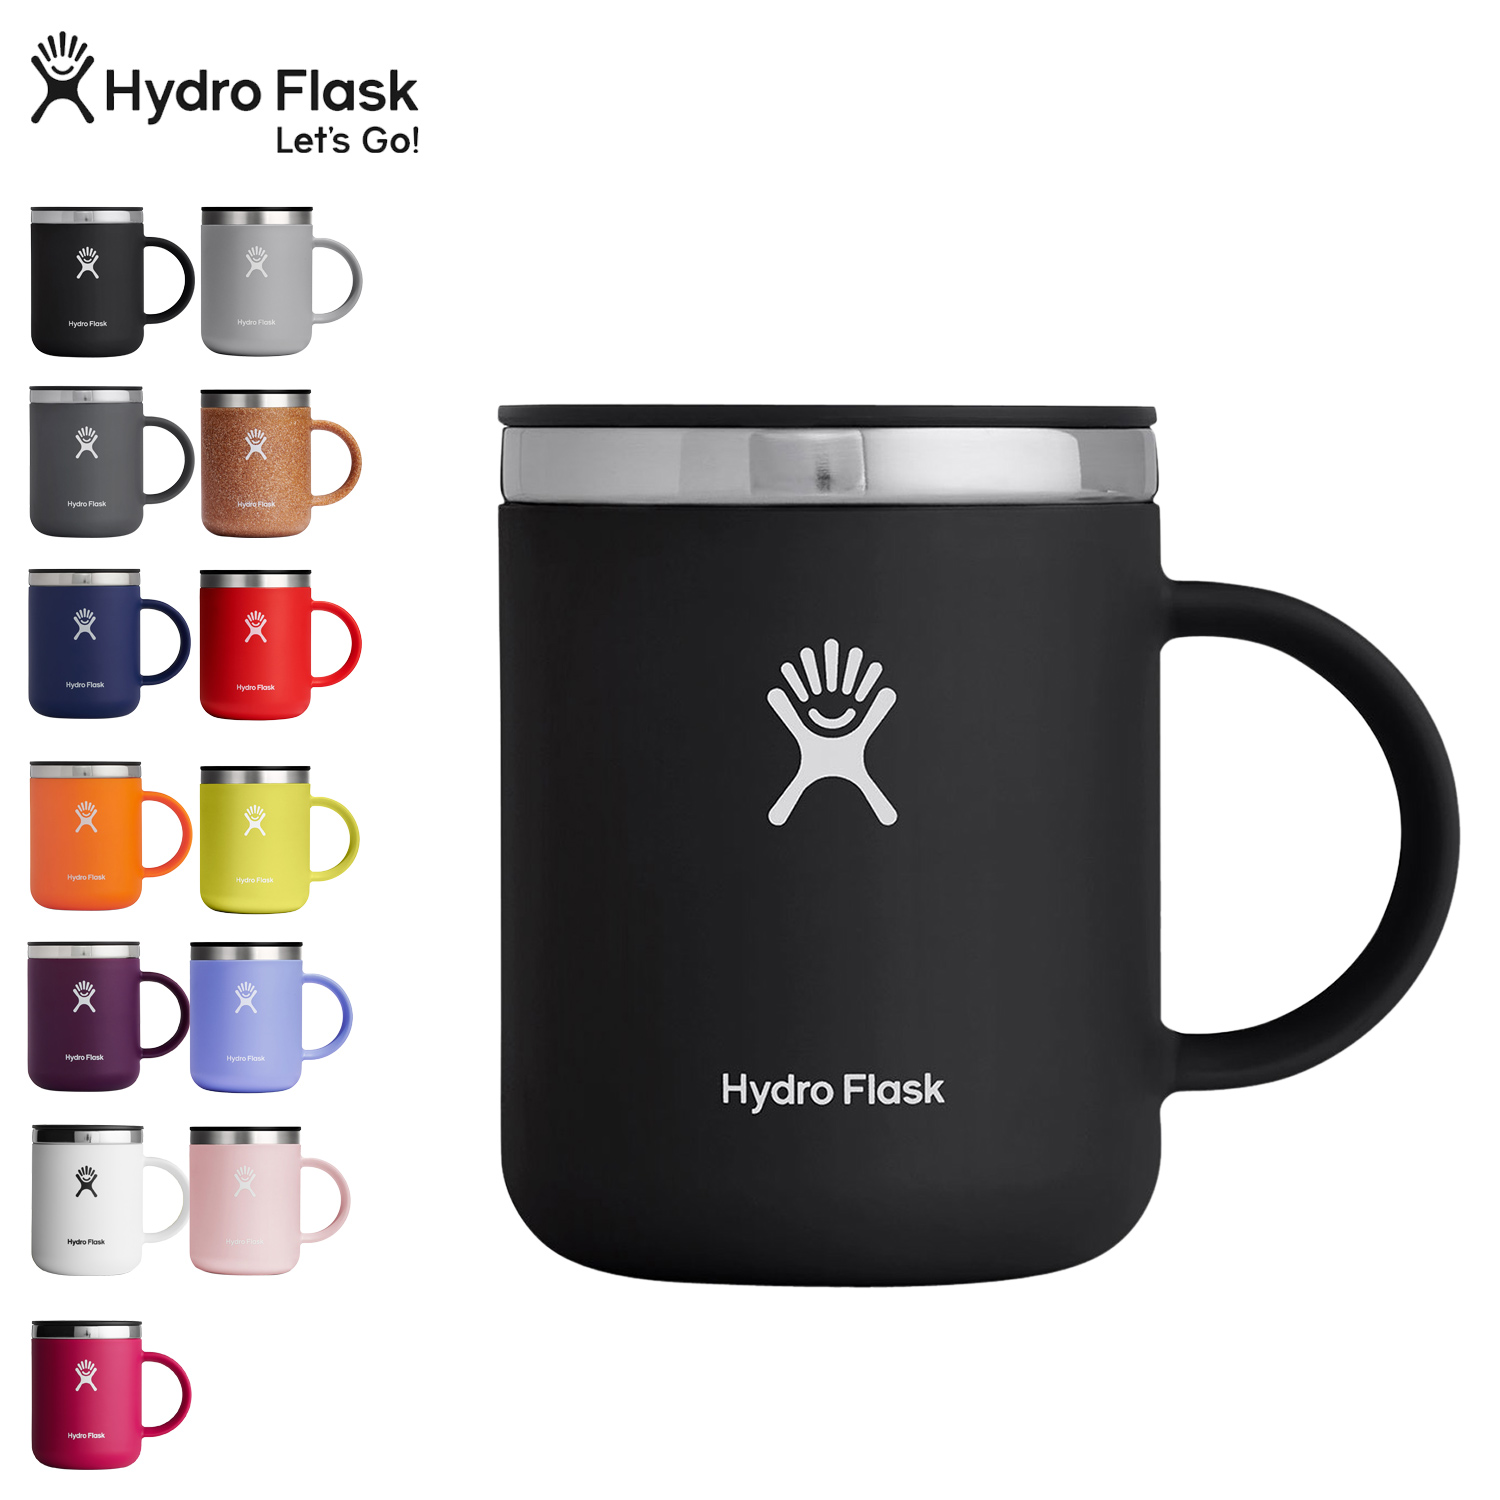 Hydro Flask CLOSEABLE COFFEE MUG ハイドロフラスク コーヒーマグ マグカップ コーヒーカップ 保温 ステンレス フタ付 ブラック グレー ネイビー オレンジ パープル 黒 5089331 アウトドア画像